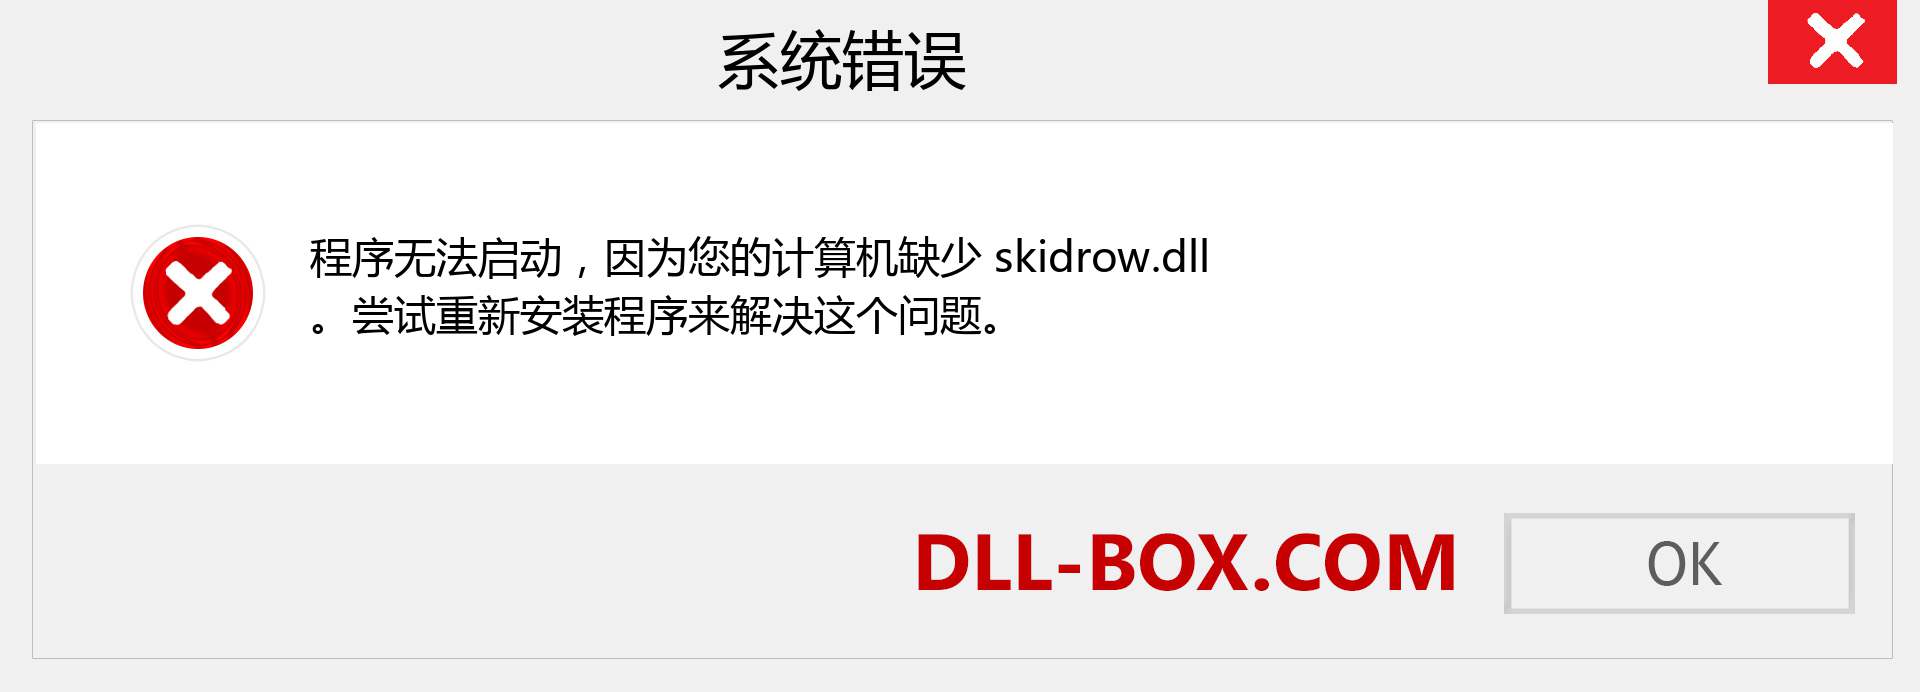 skidrow.dll 文件丢失？。 适用于 Windows 7、8、10 的下载 - 修复 Windows、照片、图像上的 skidrow dll 丢失错误